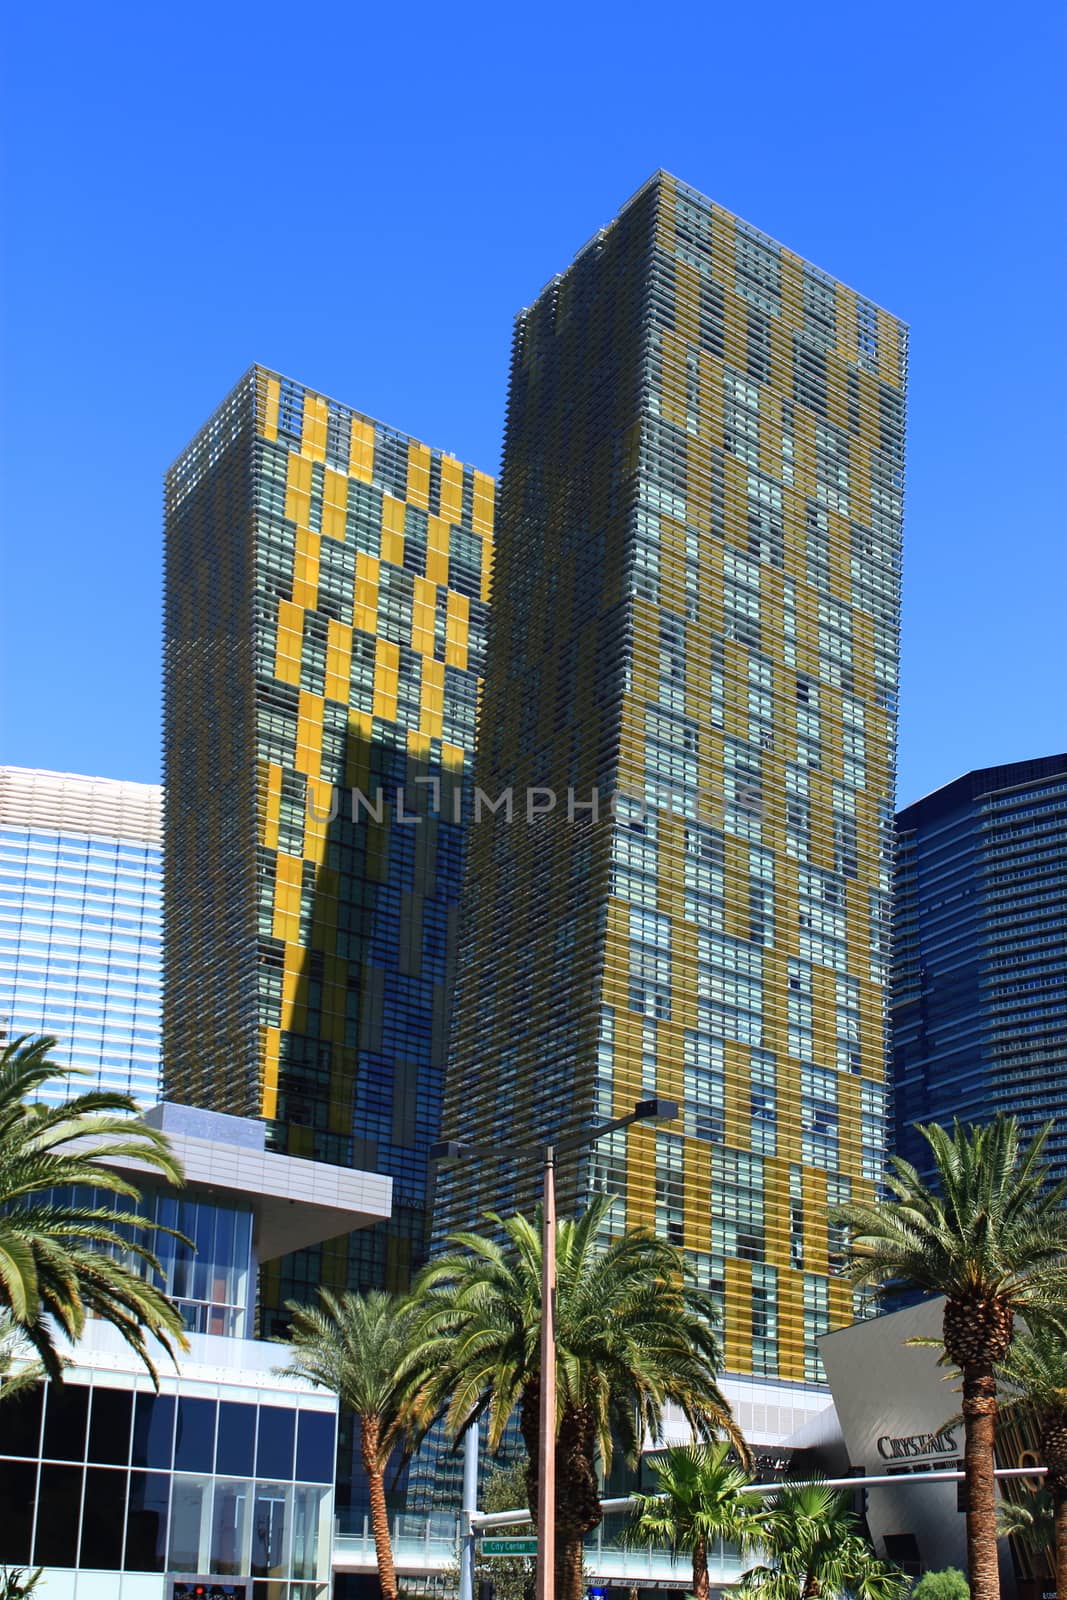 City Center Complex buildings on the famous Las Vegas Strip